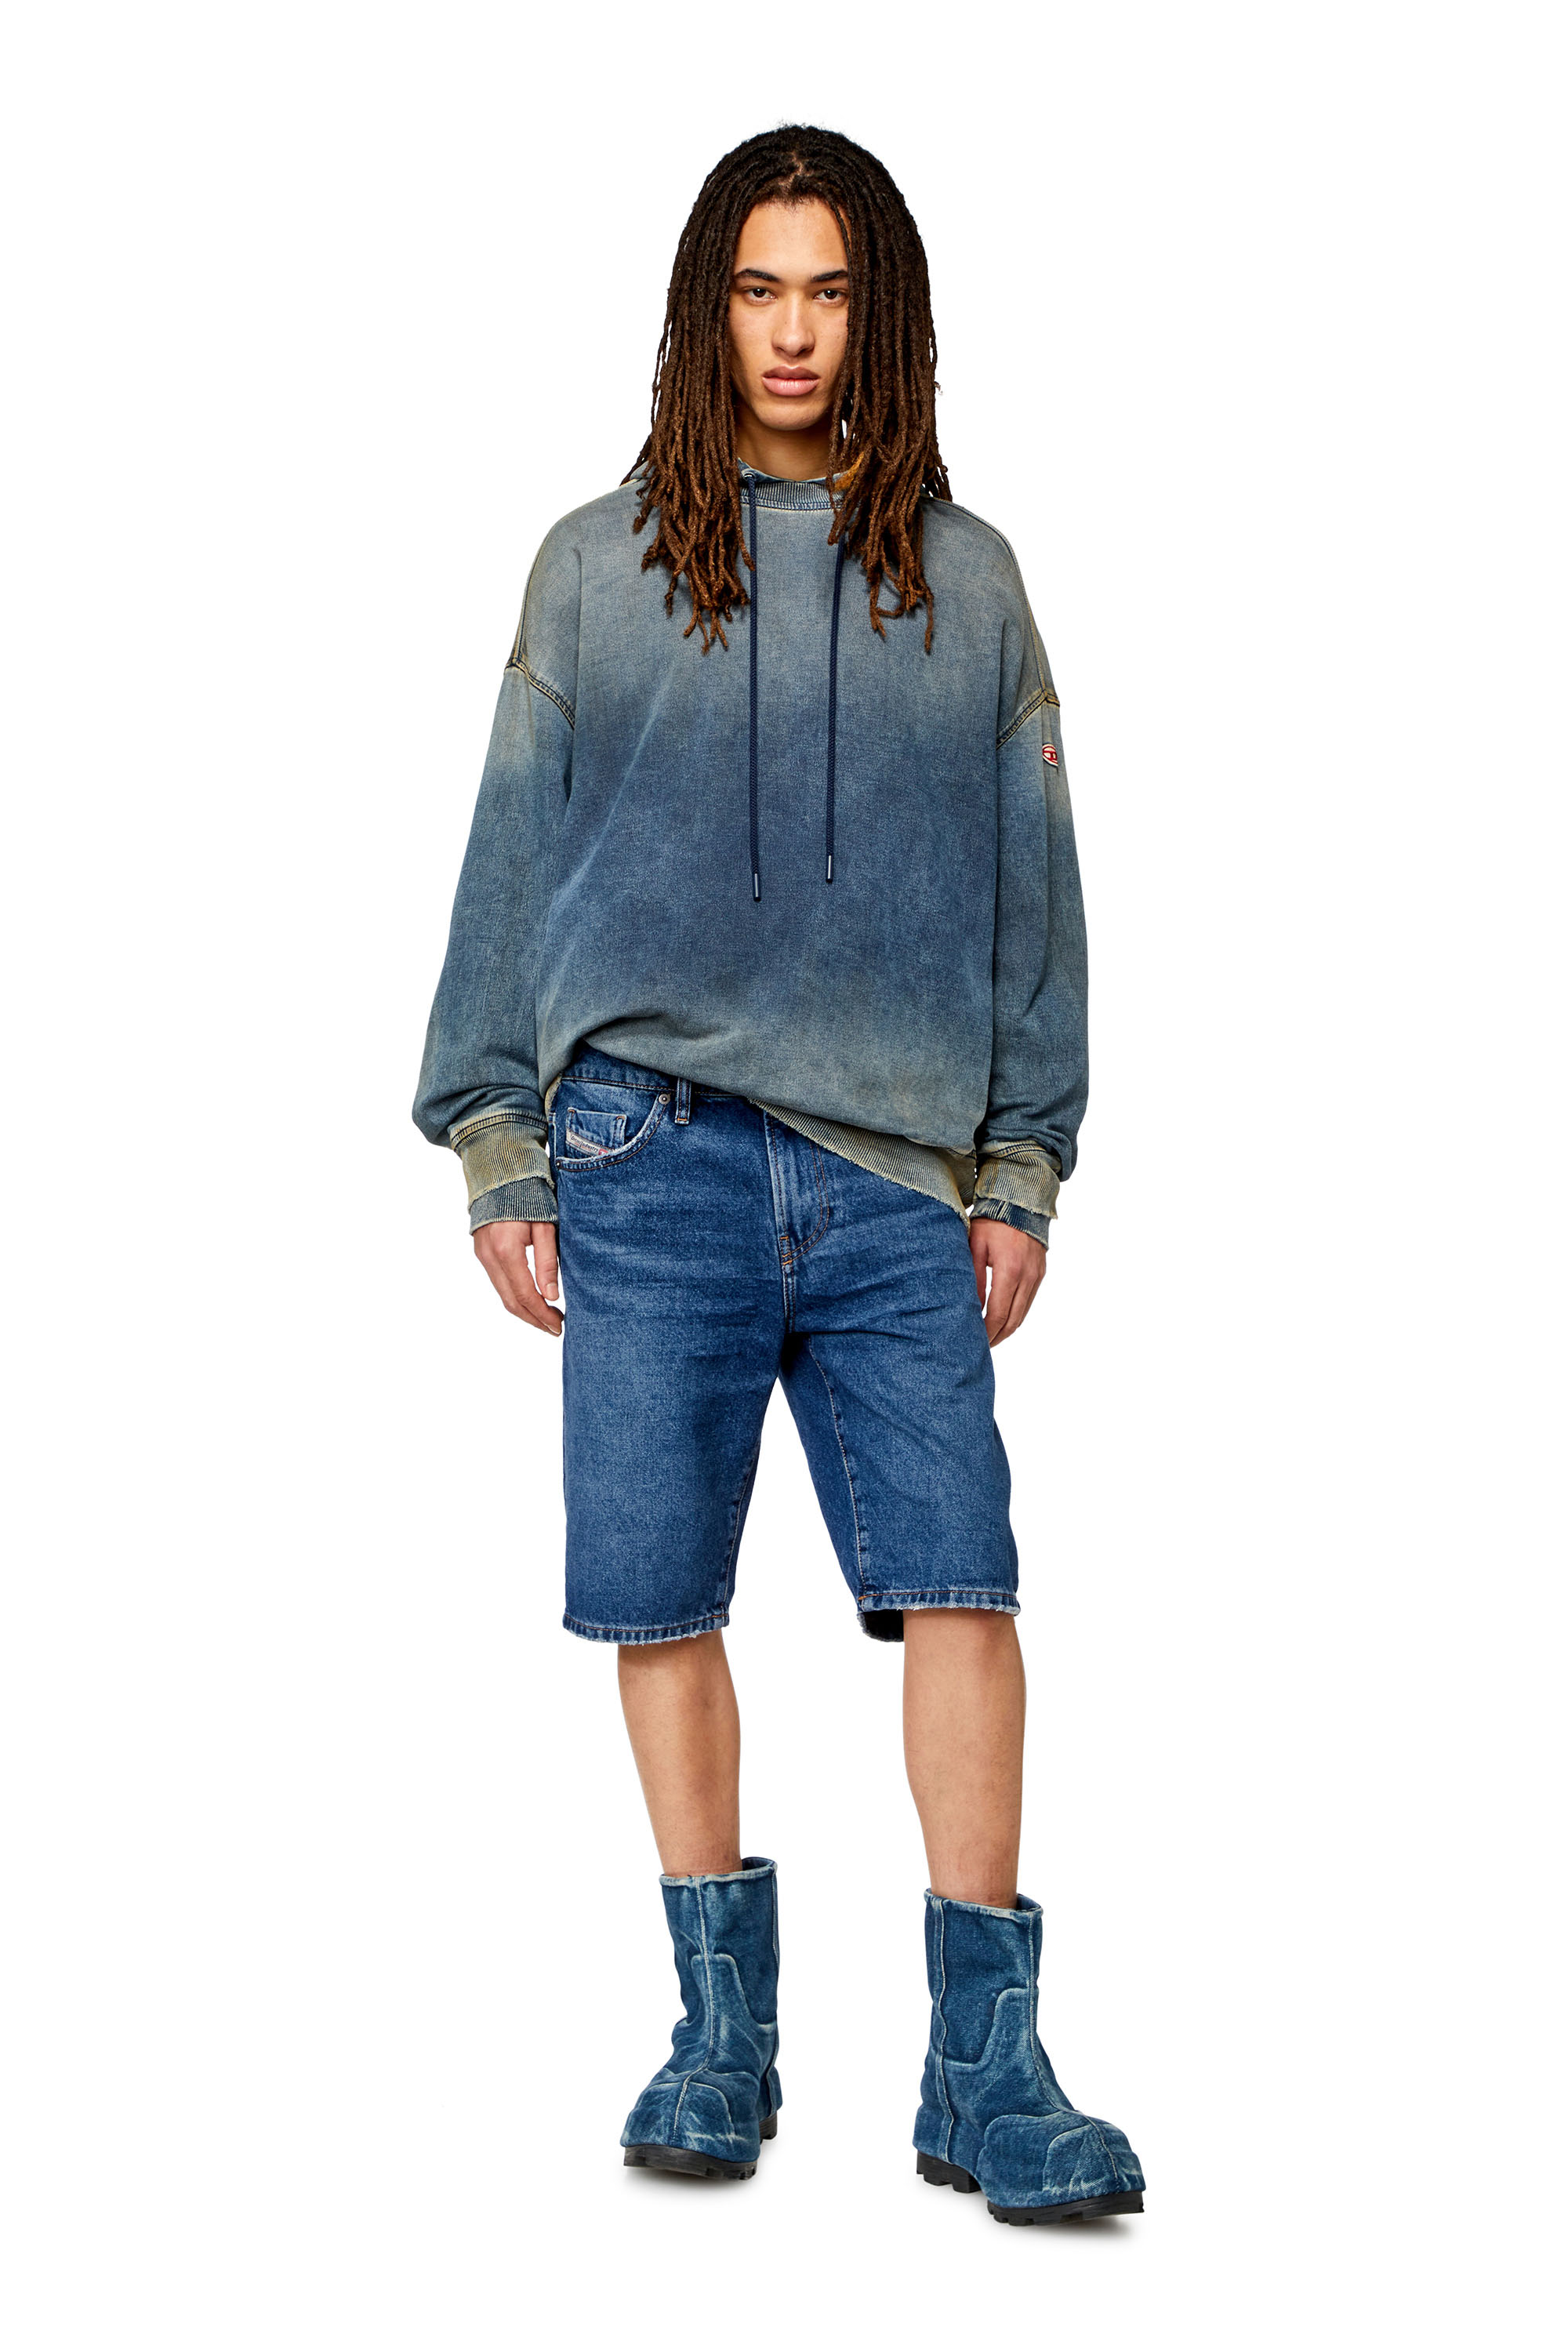 Diesel - SLIM-SHORT, Man Slim denim shorts in Blue - Image 2